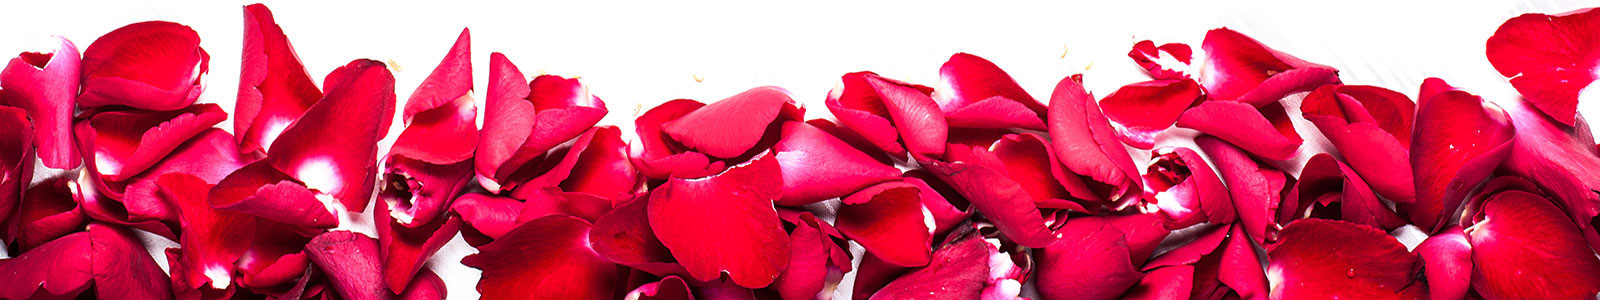 №1822 - Лепестки красных роз